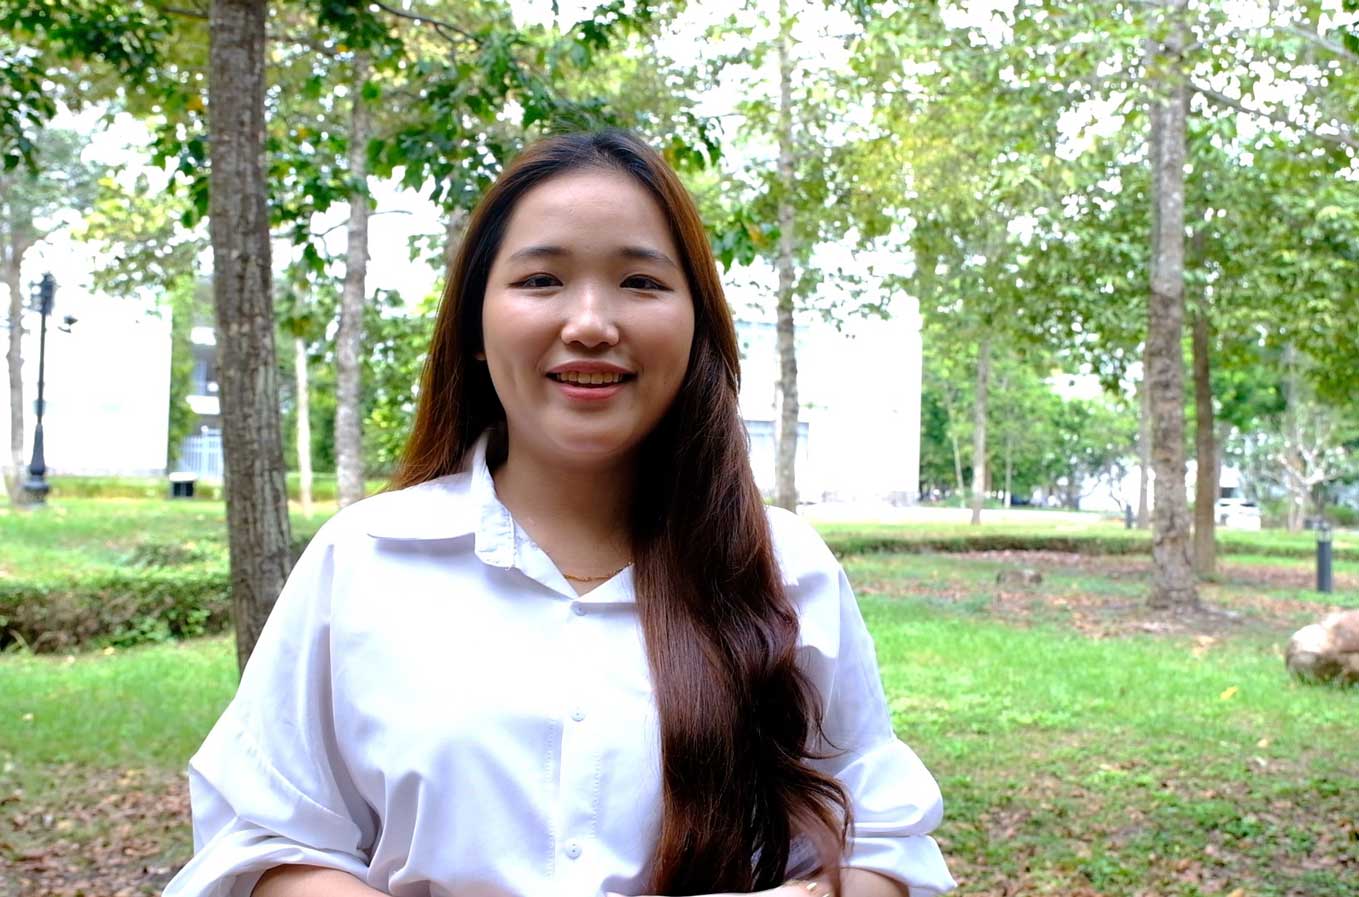 Nữ sinh Ngọc Trang xem làm trái ngành là cơ hội để bản thân có những kinh nghiệm làm việc quý giá, giúp ích cho tương lai sau này. Ảnh: Mỹ Ly